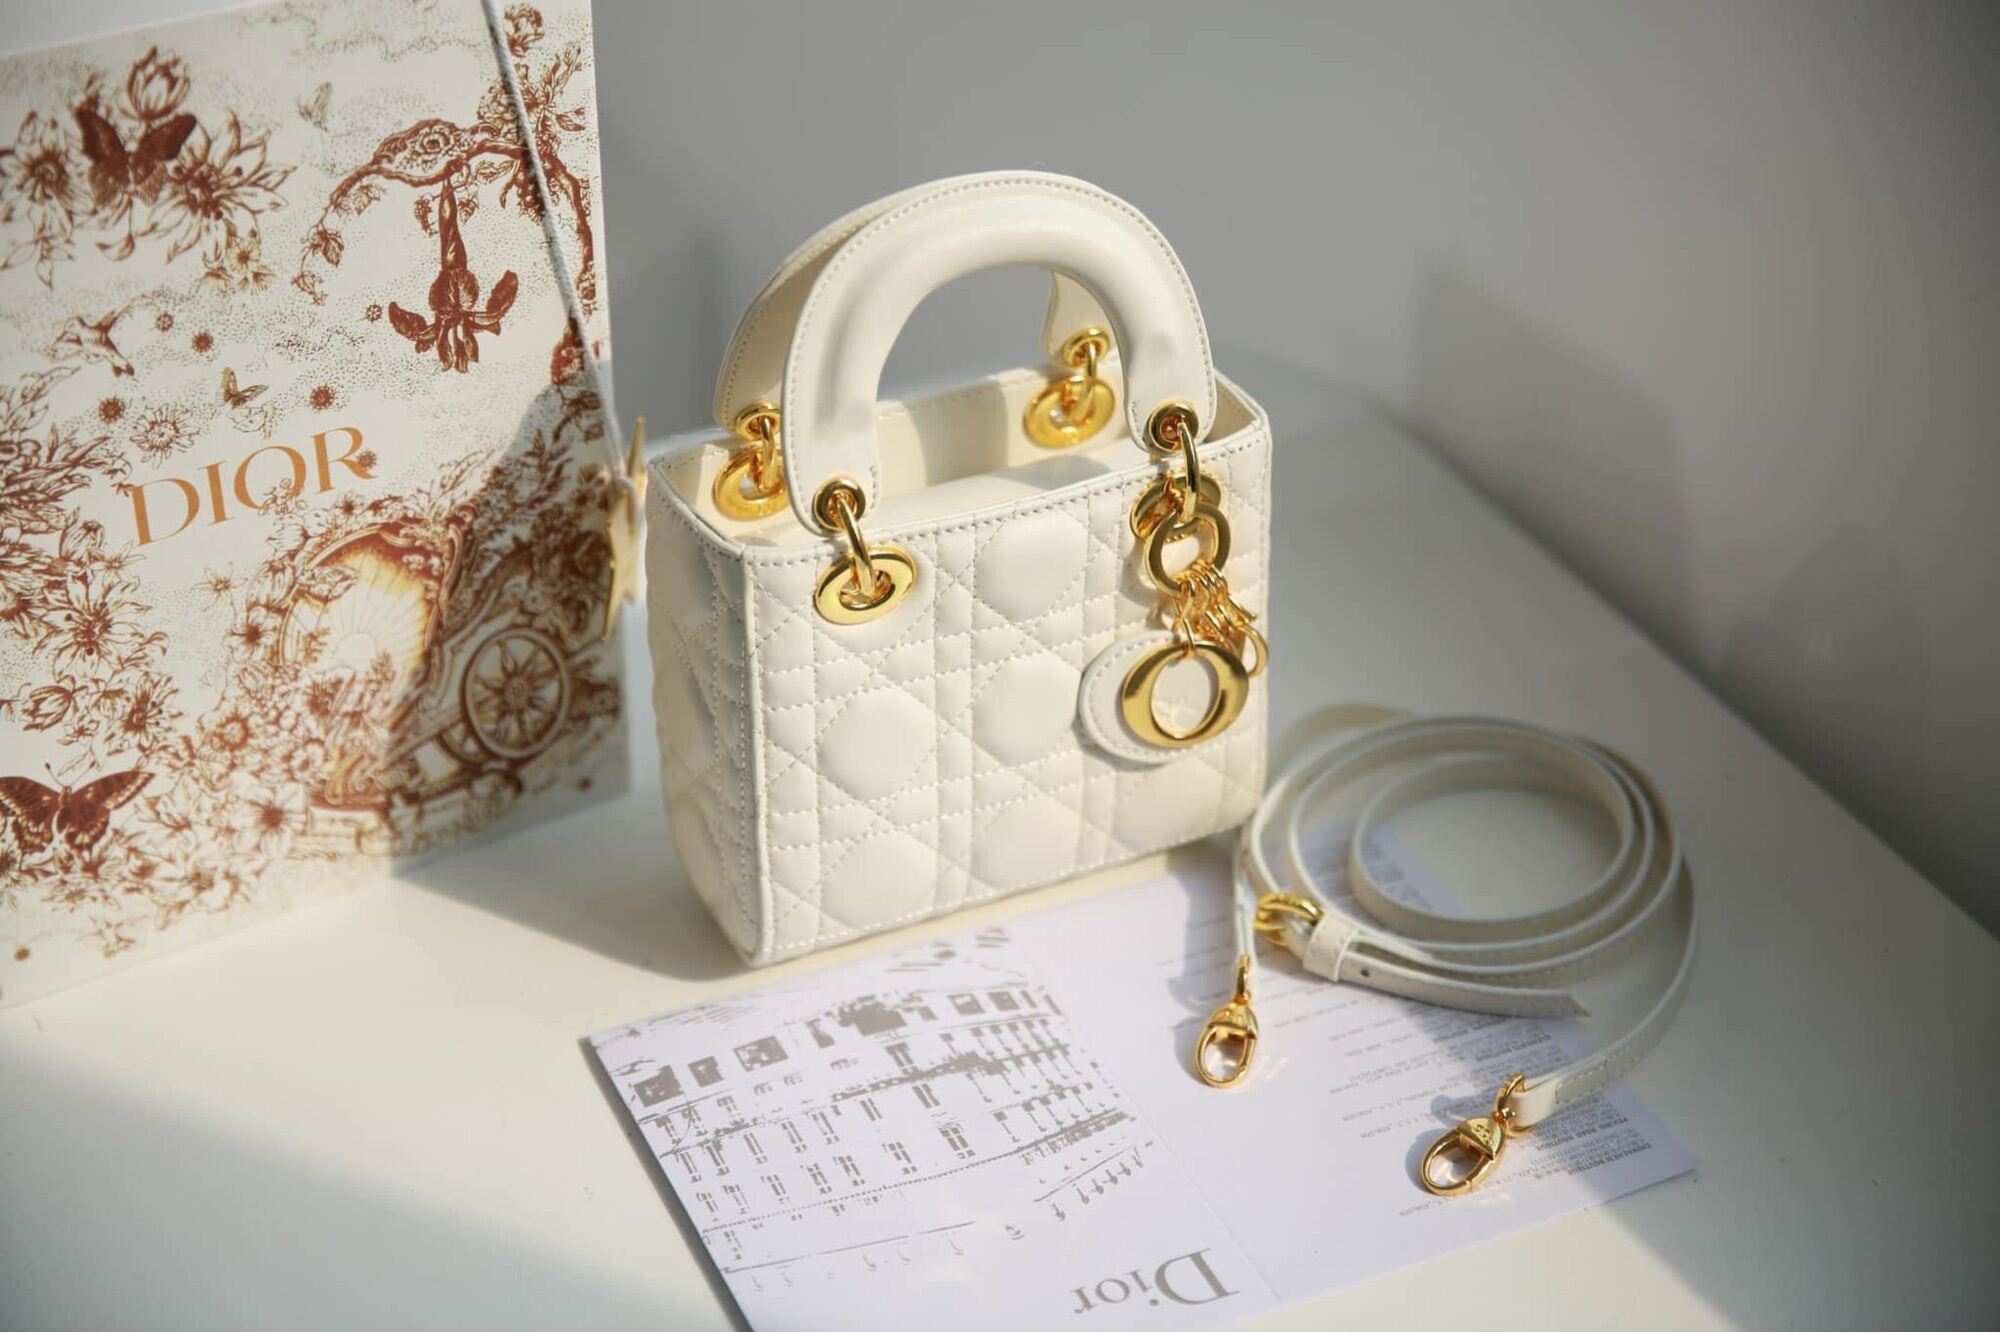 Túi Small Lady Dior DJoy Bag màu trắng da cừu 22cm best quality